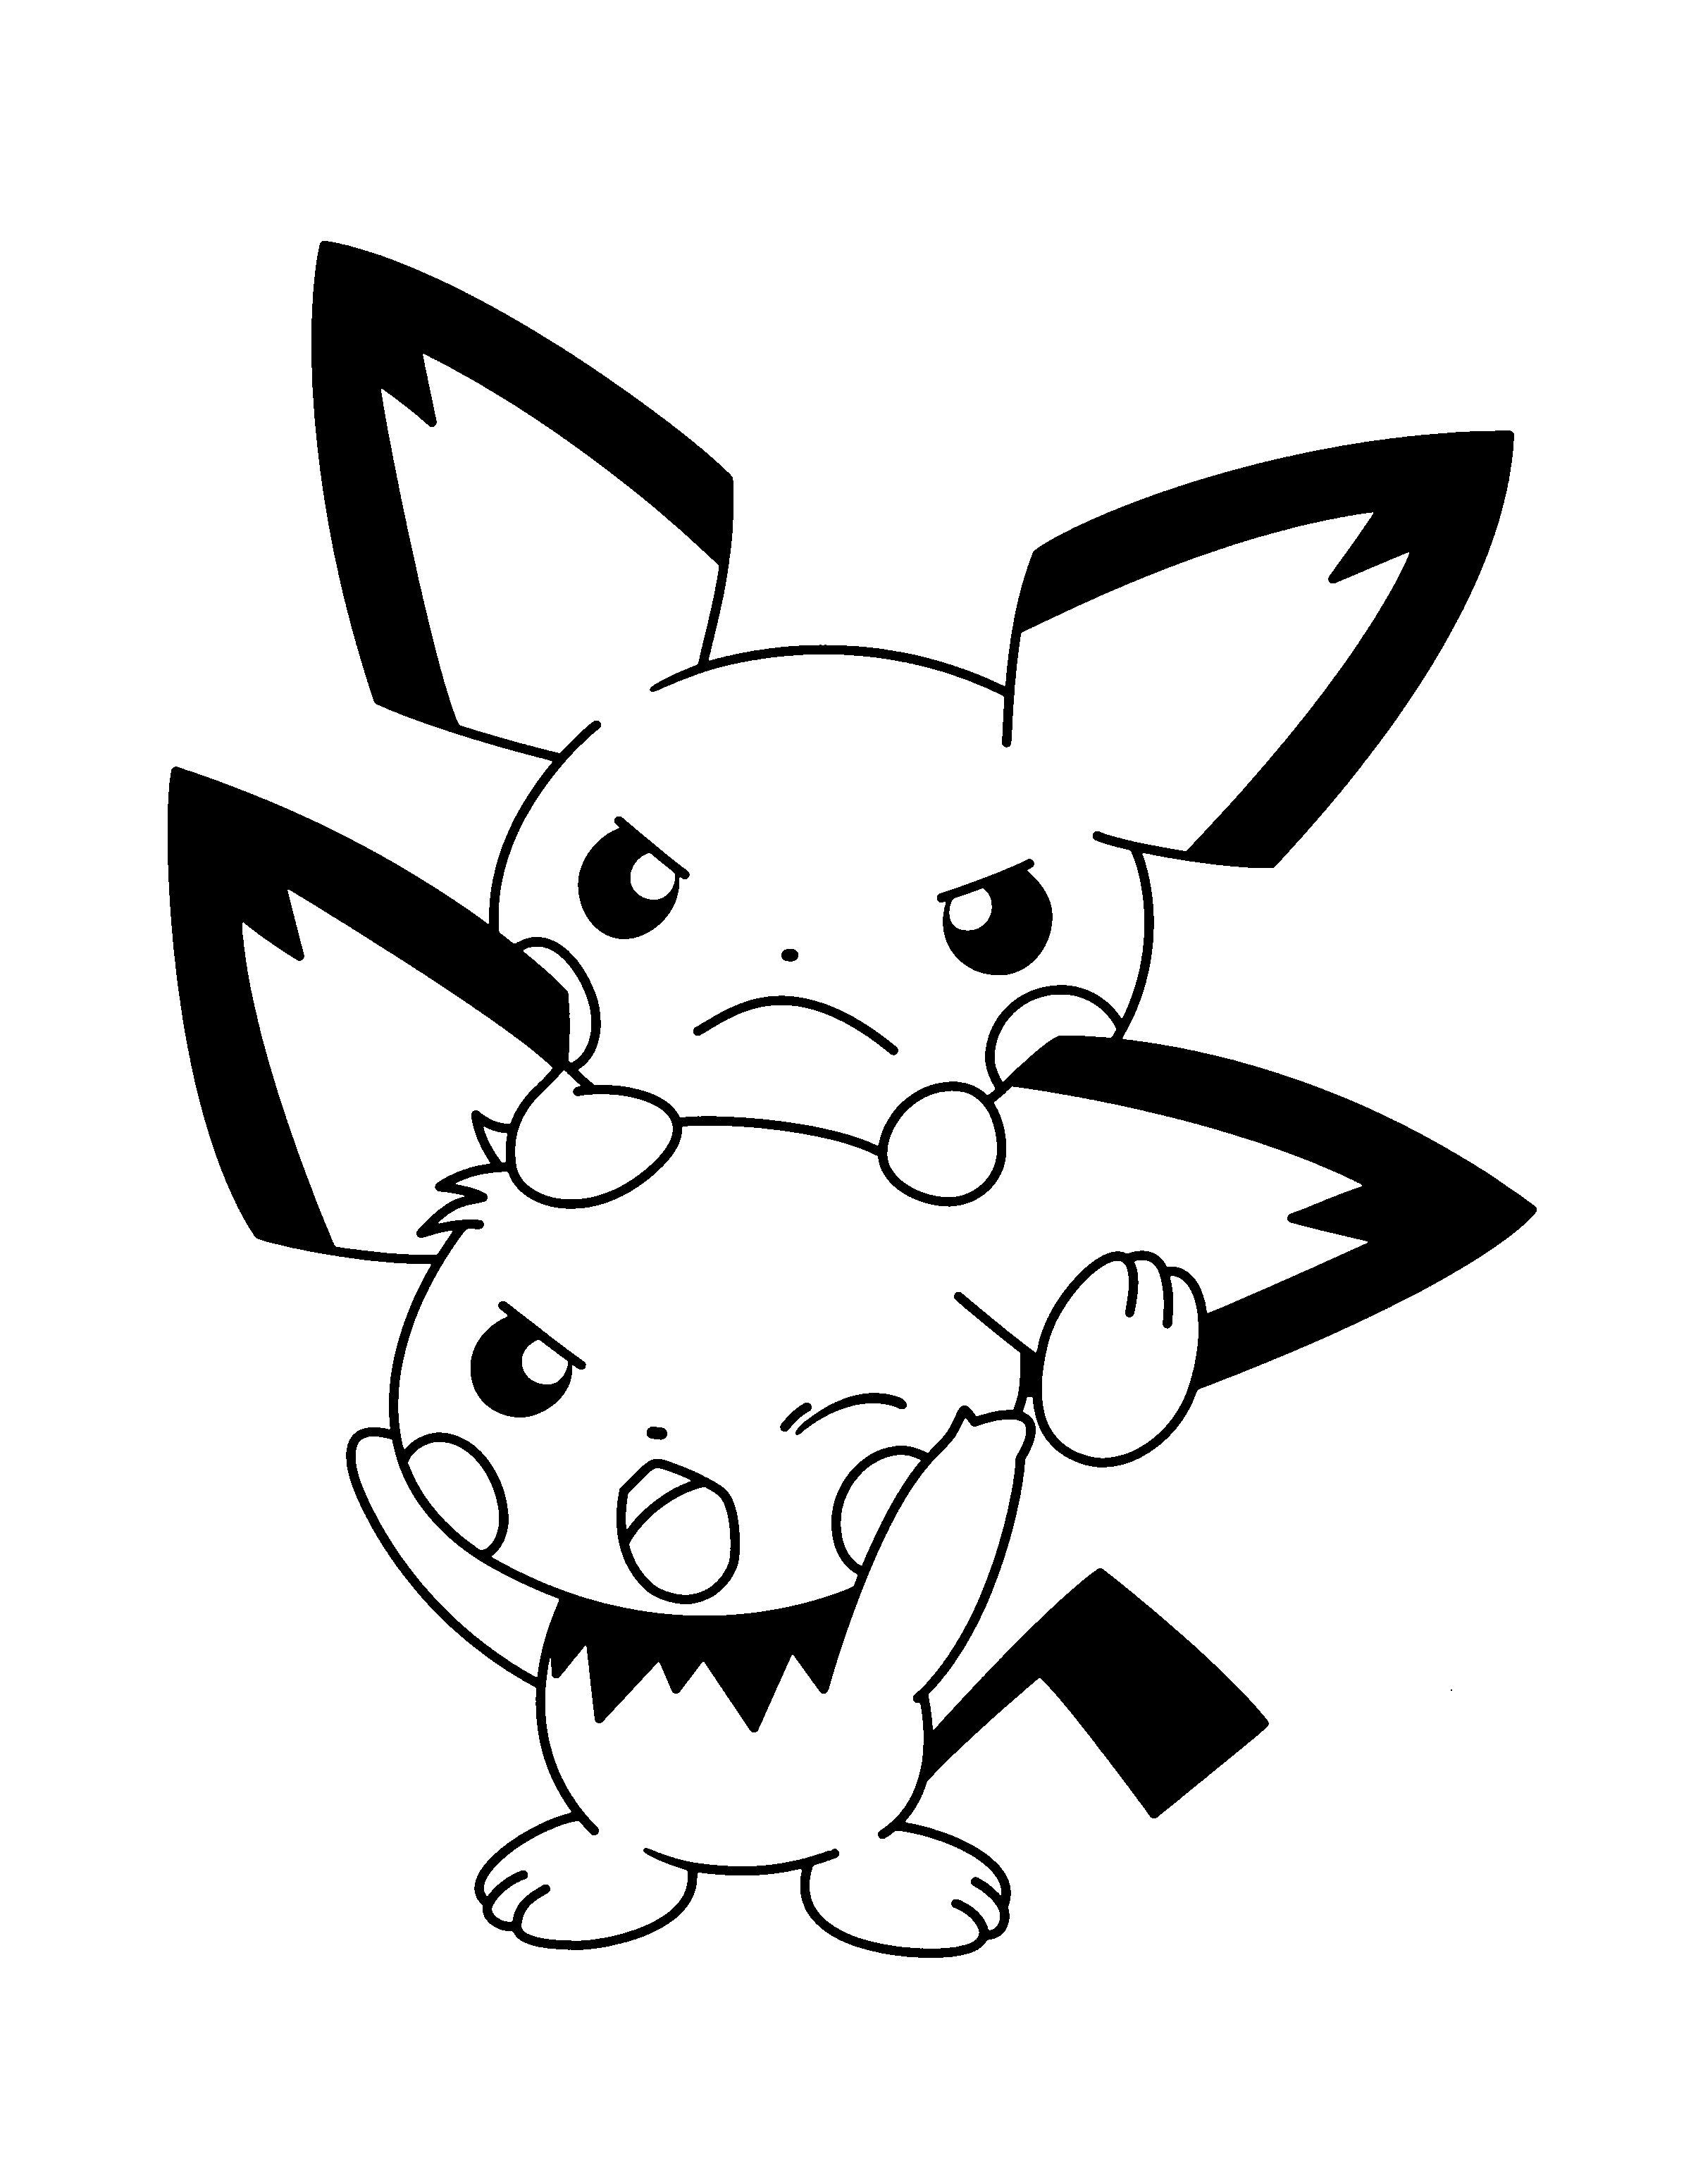 dibujo-para-colorear-pokemon-imagen-animada-0998